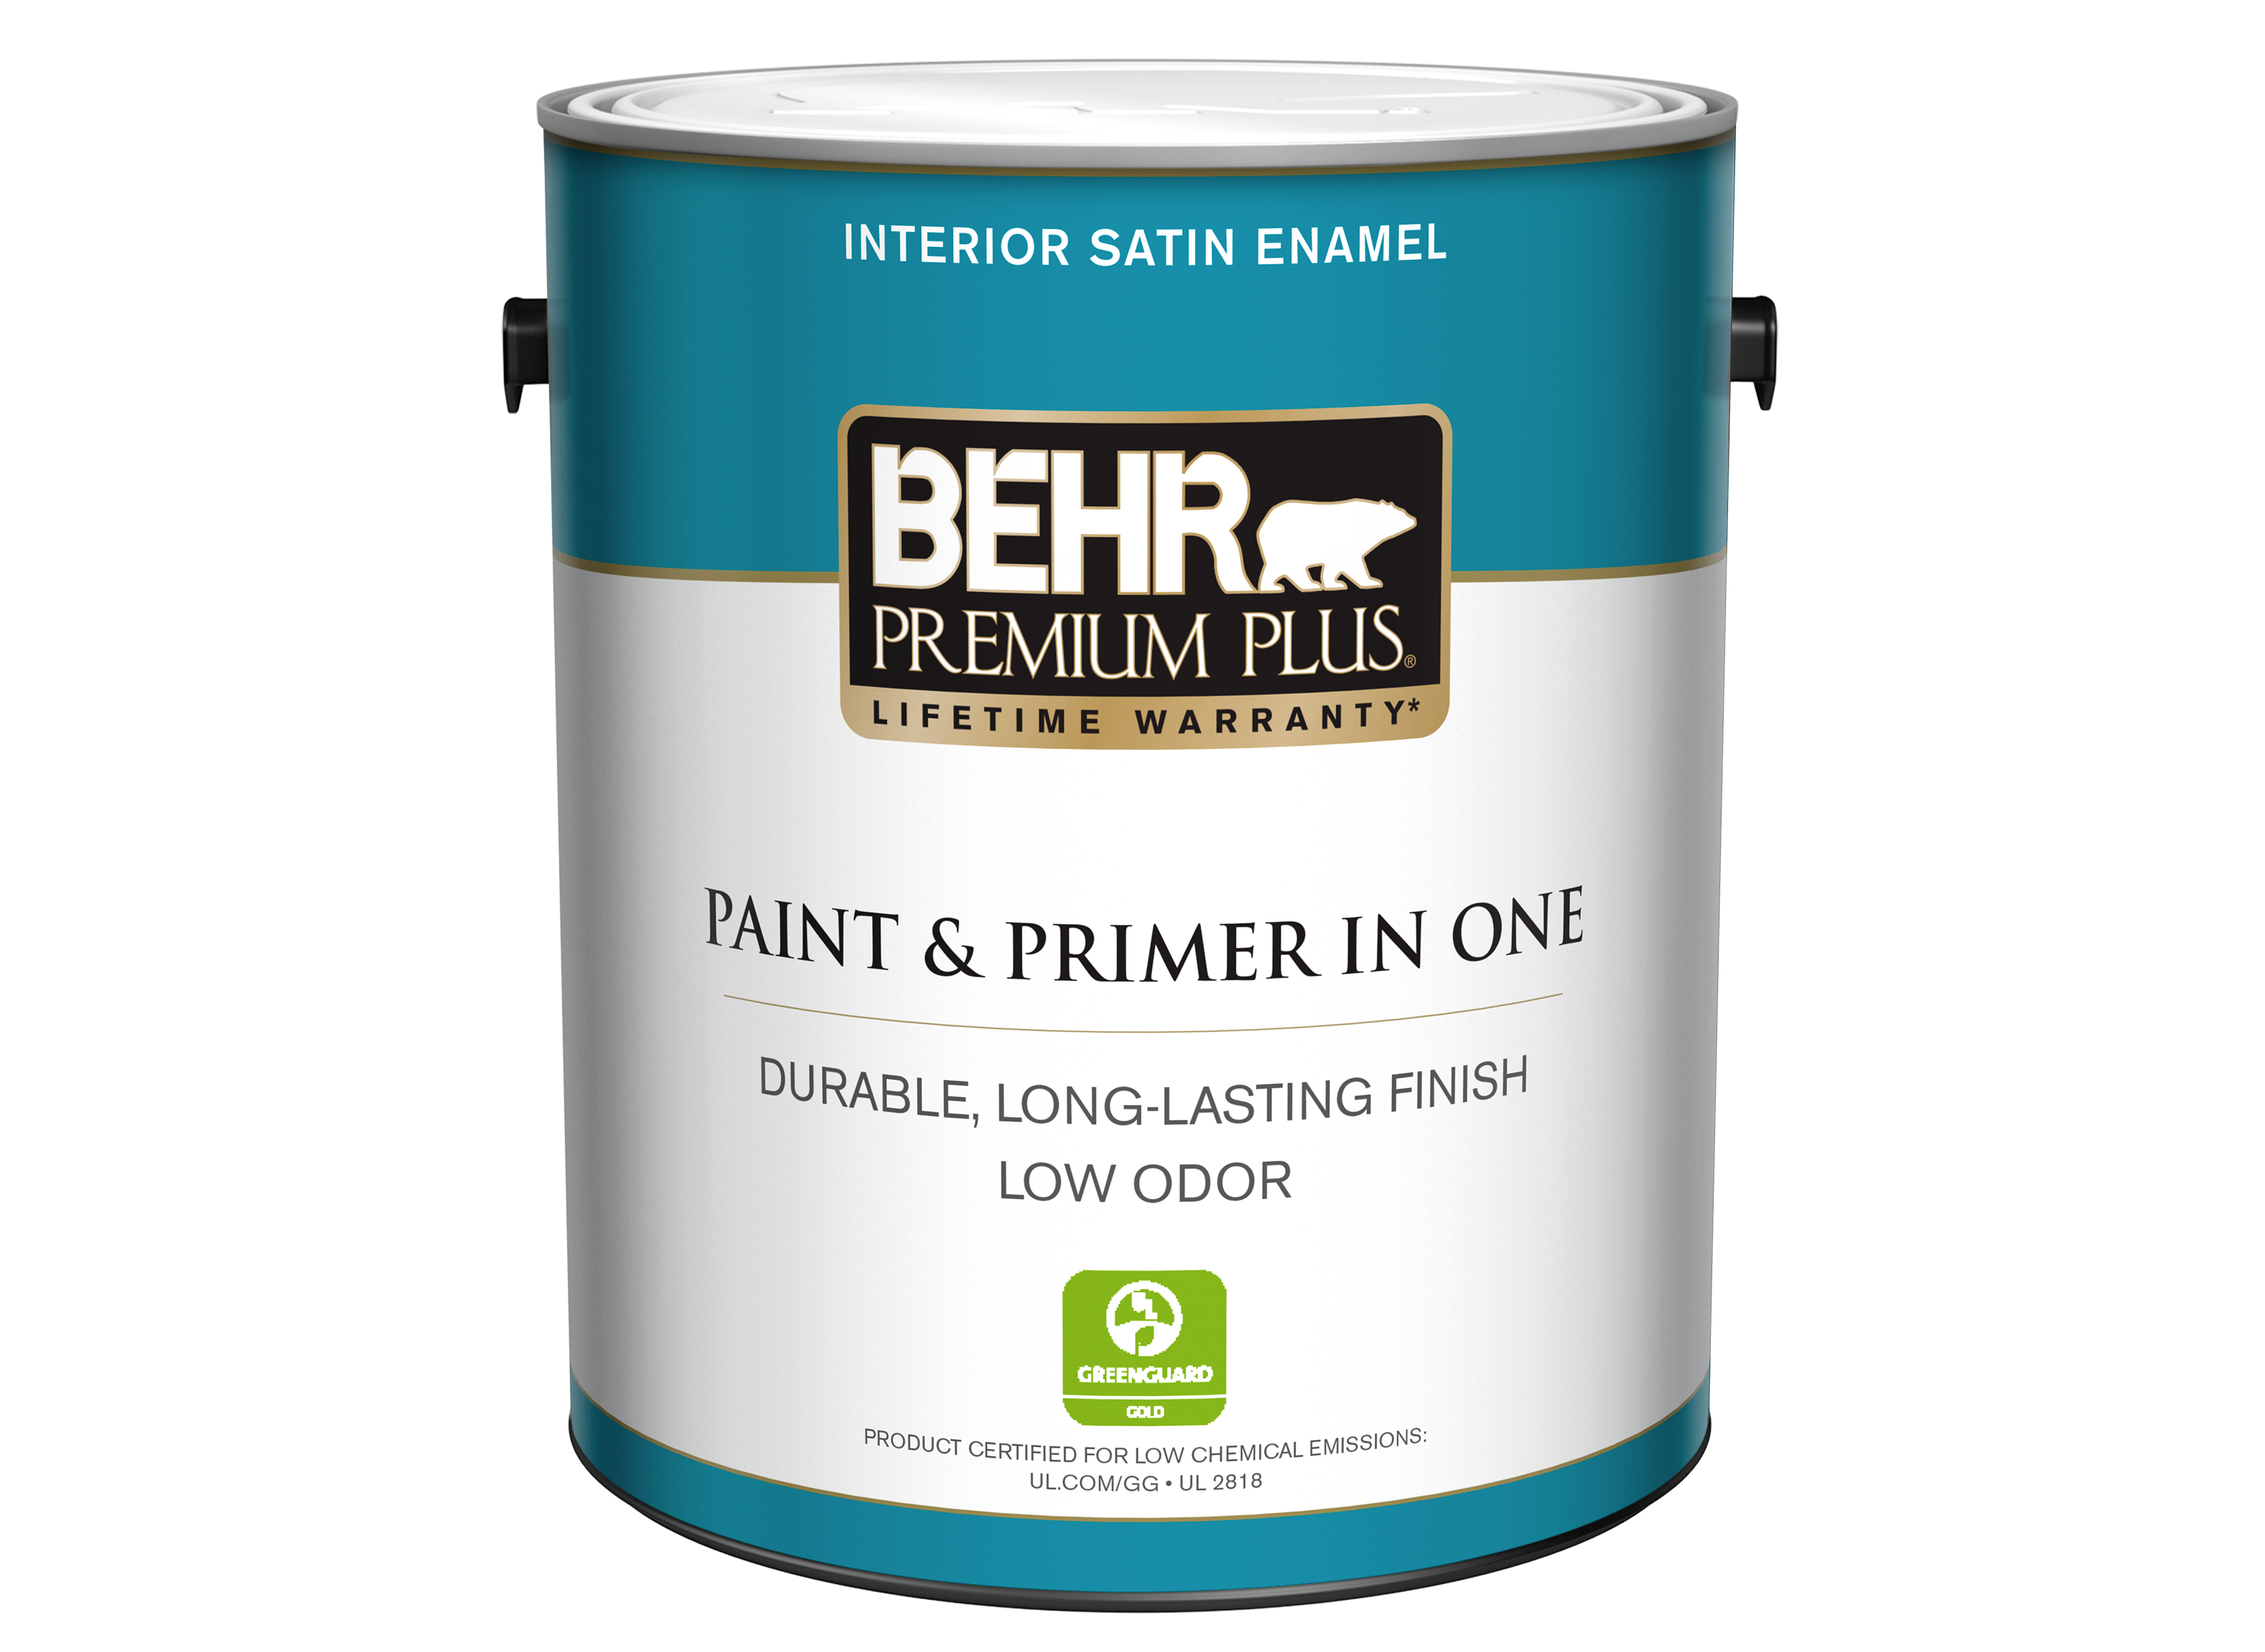 Behr Premium Plus (Home Depot) Paint - Consumer Reports